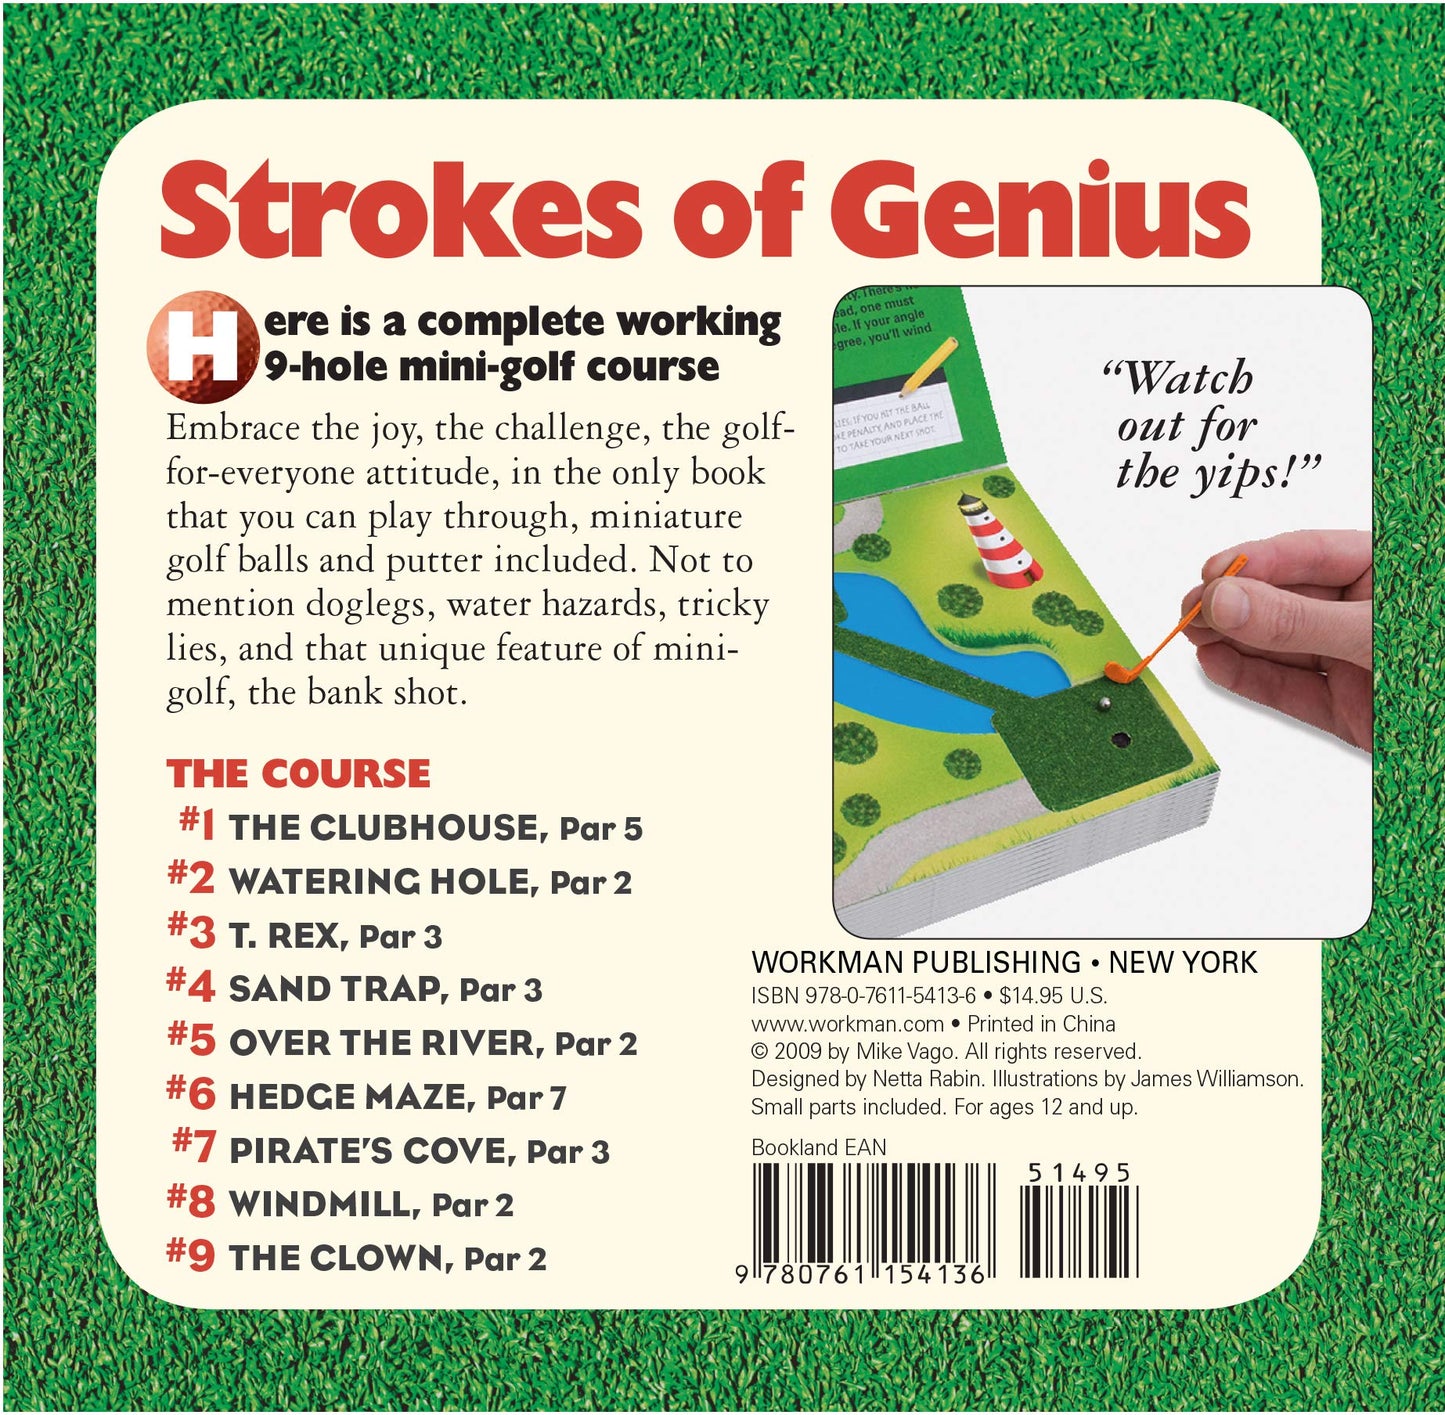 Miniature Book of Miniature Golf